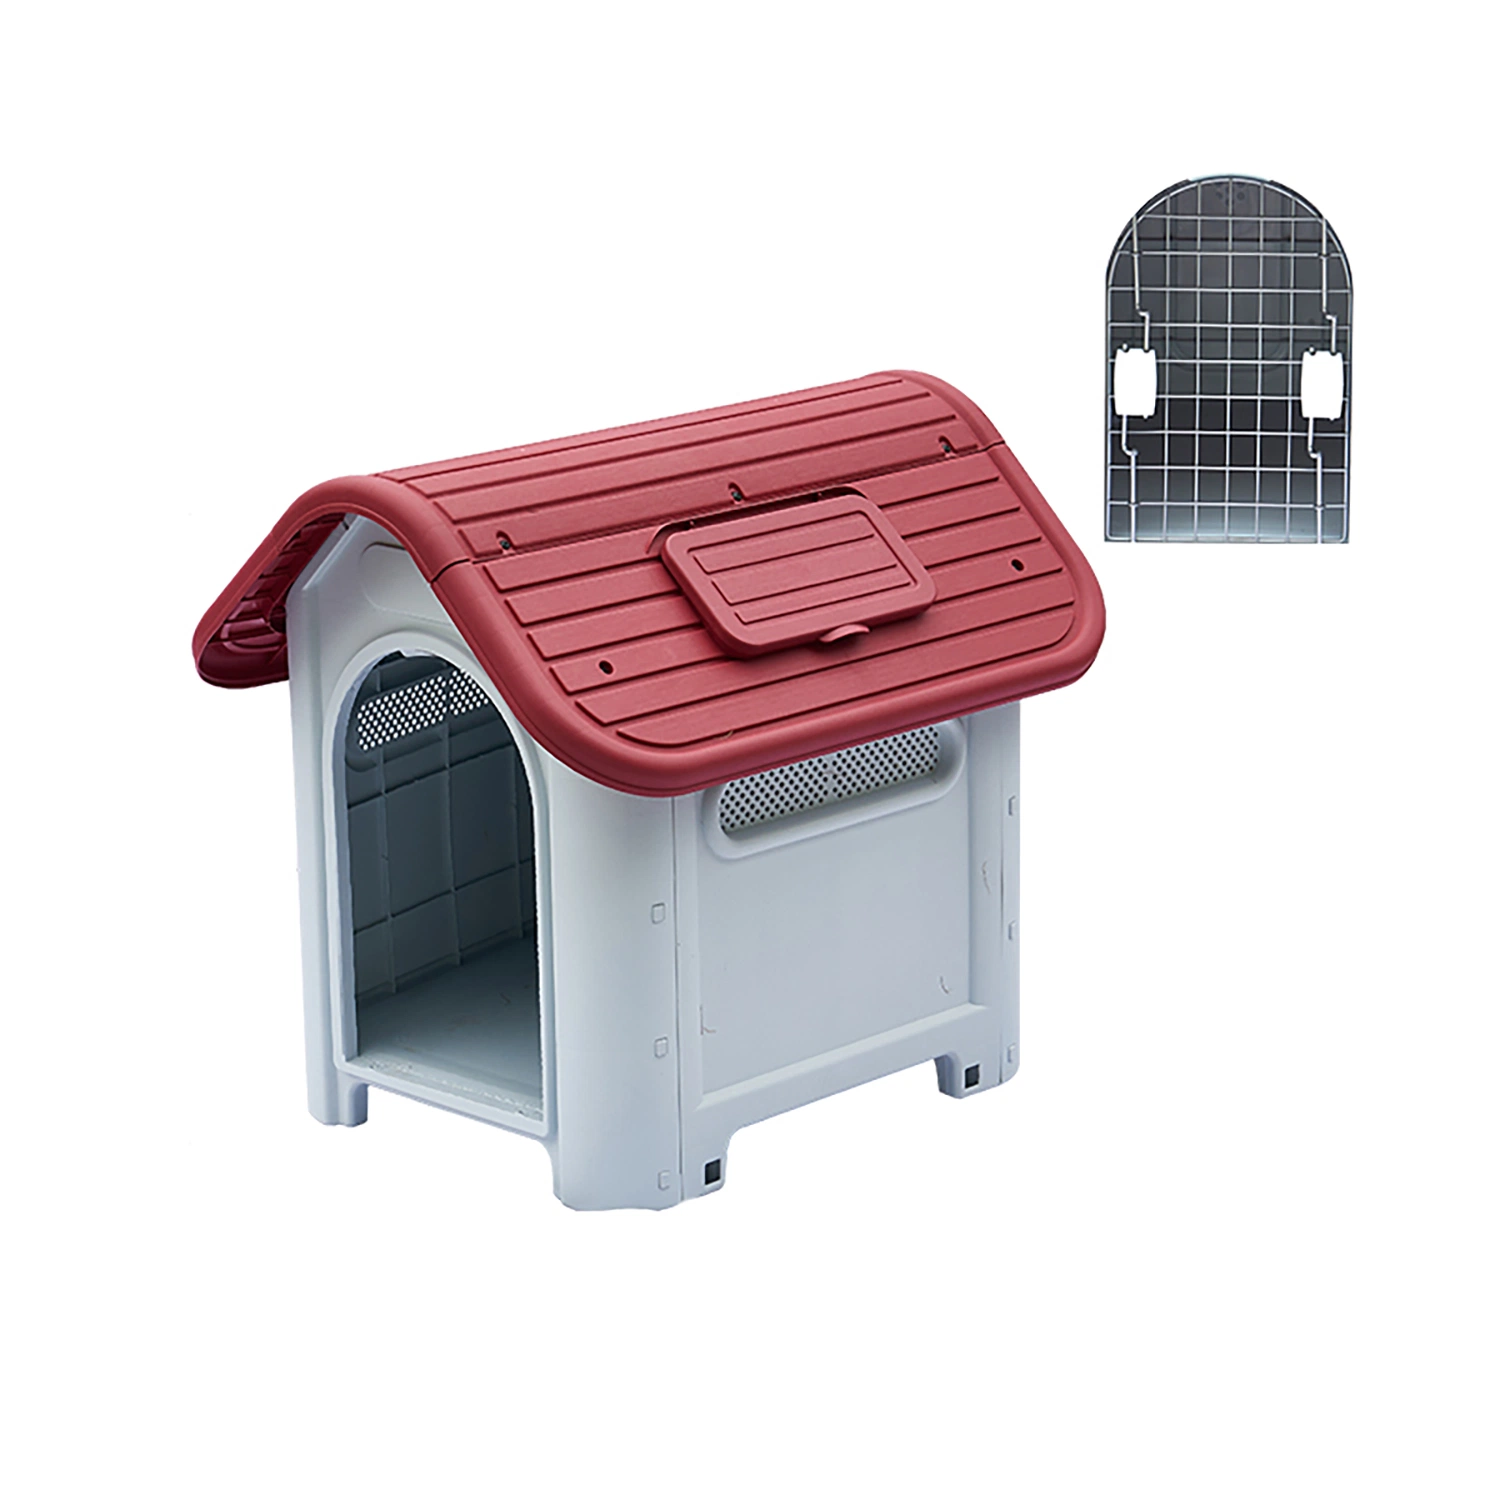 Ecológico - à prova de água Cheap moderno pequeno / cãozinho removível canil Canil Exterior confortável Ventile Luxury Plastic Dog Cage Pet House para Jardim quintal